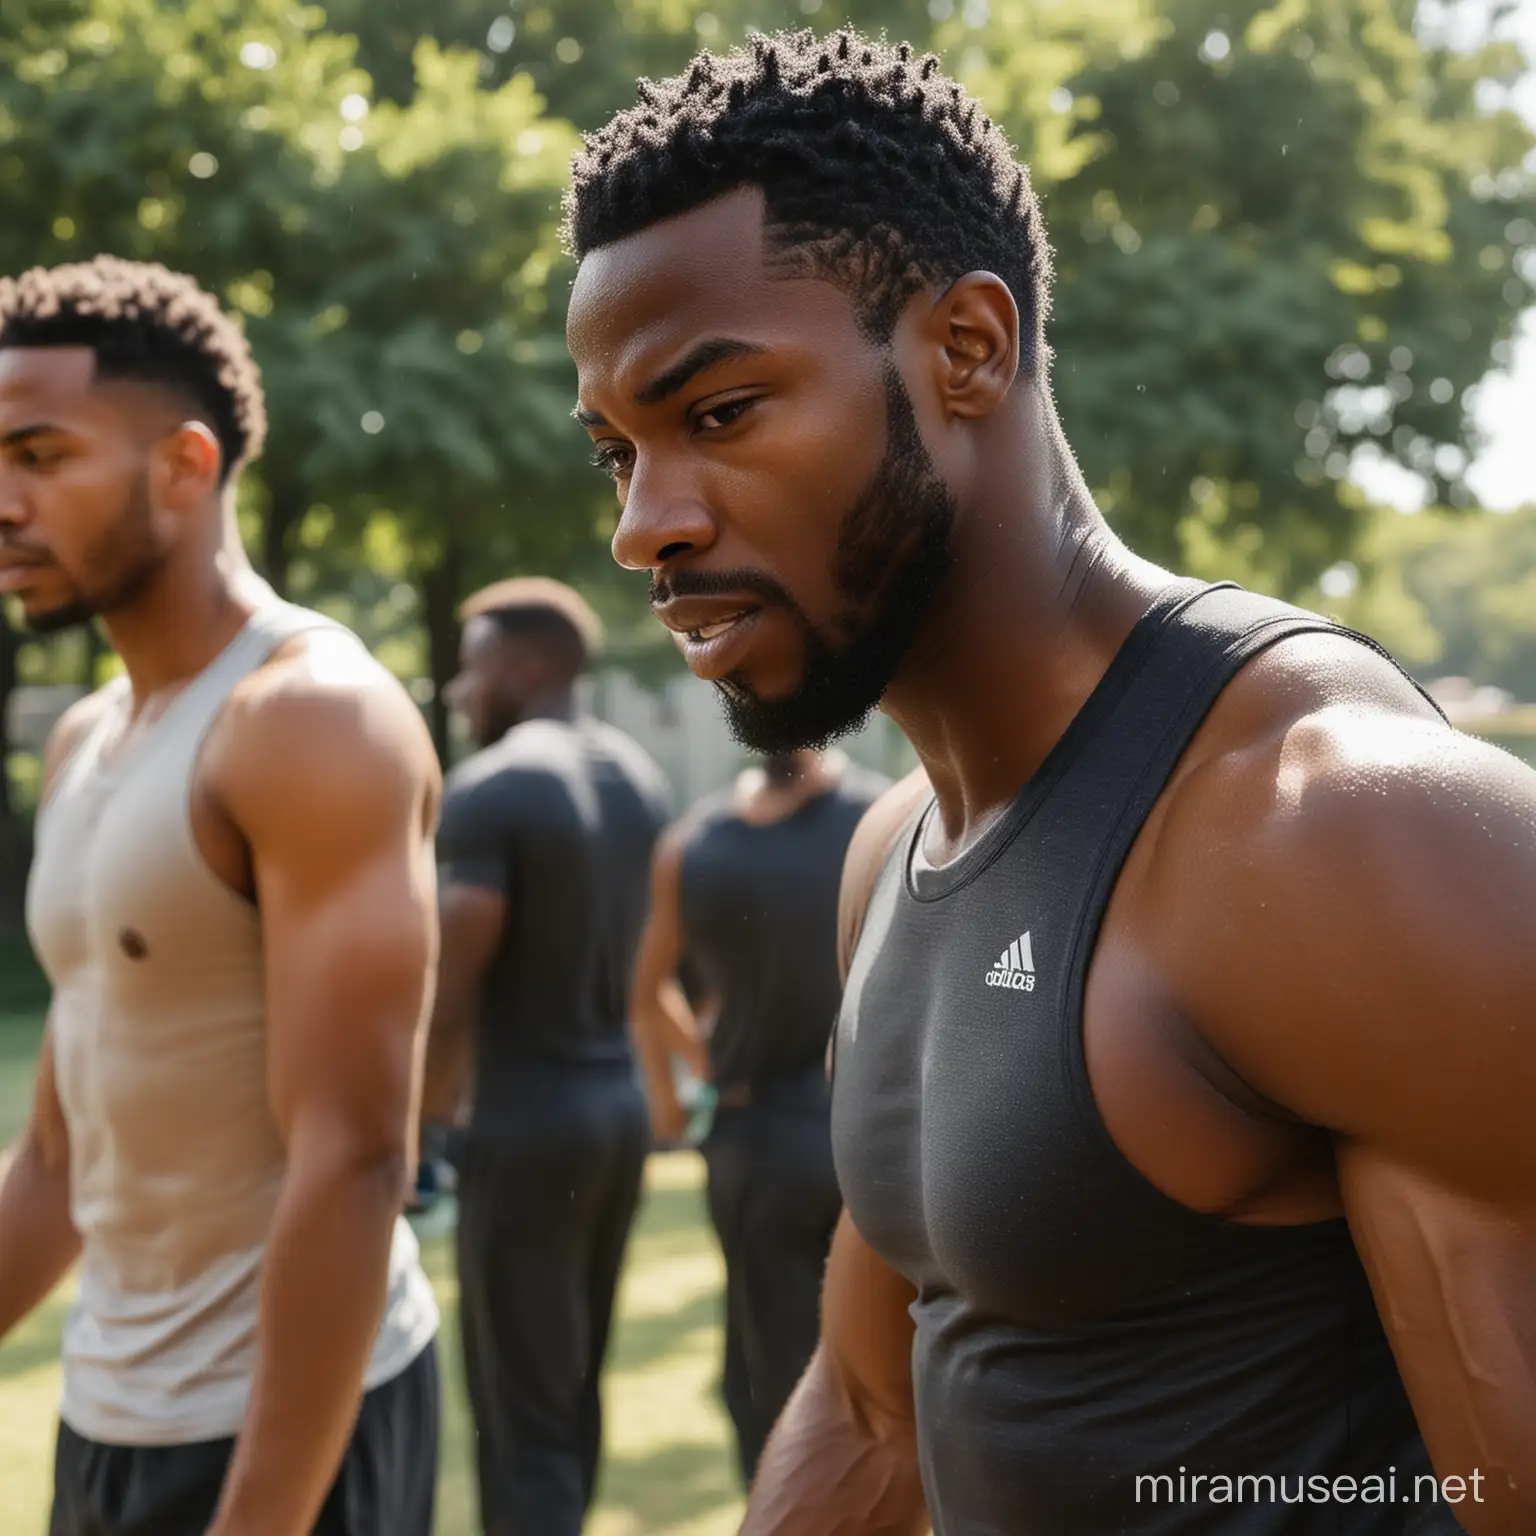 Black male sweaty athletes training outside.